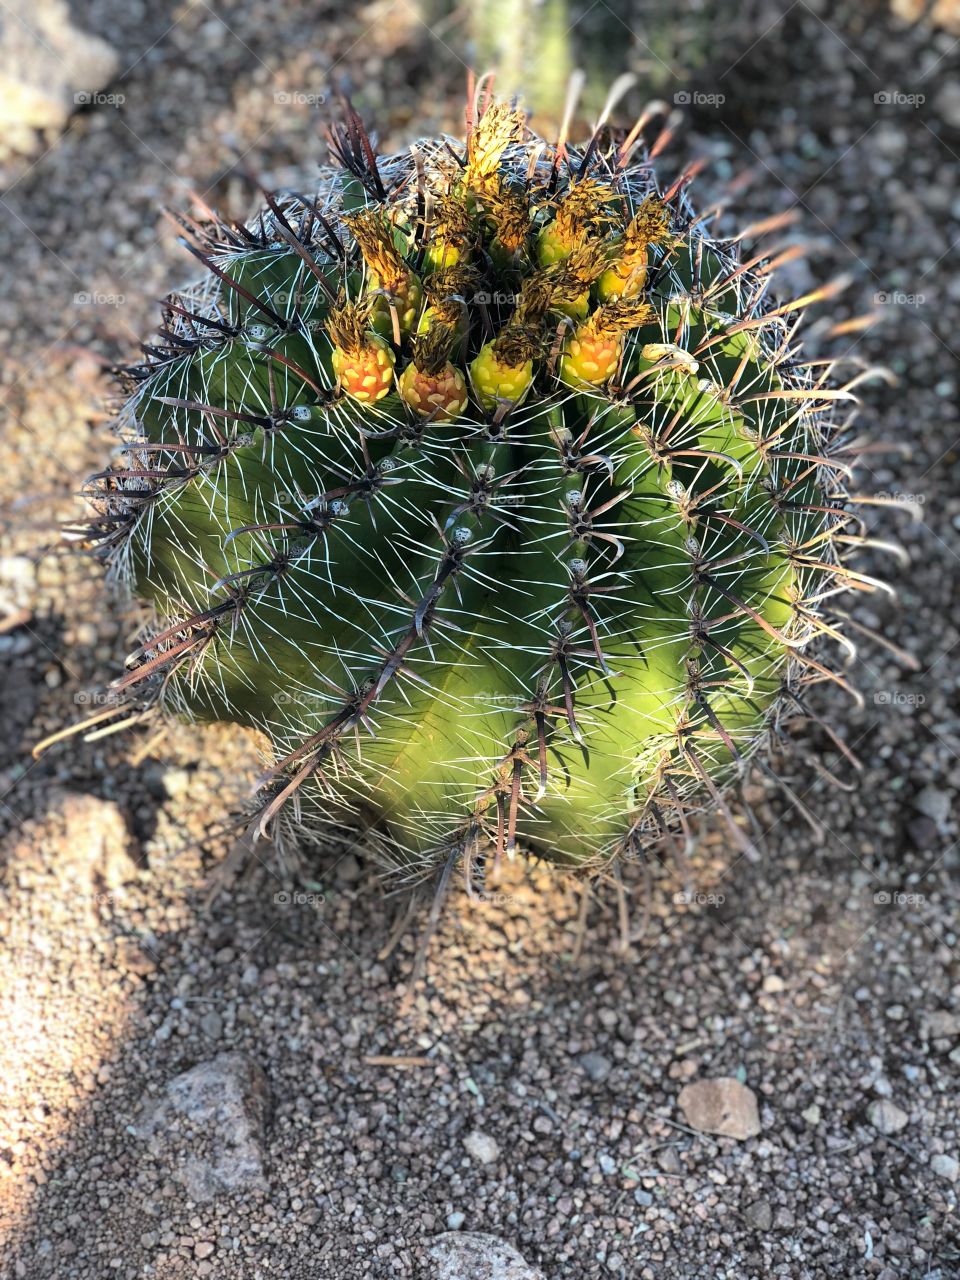 Desert cactus 